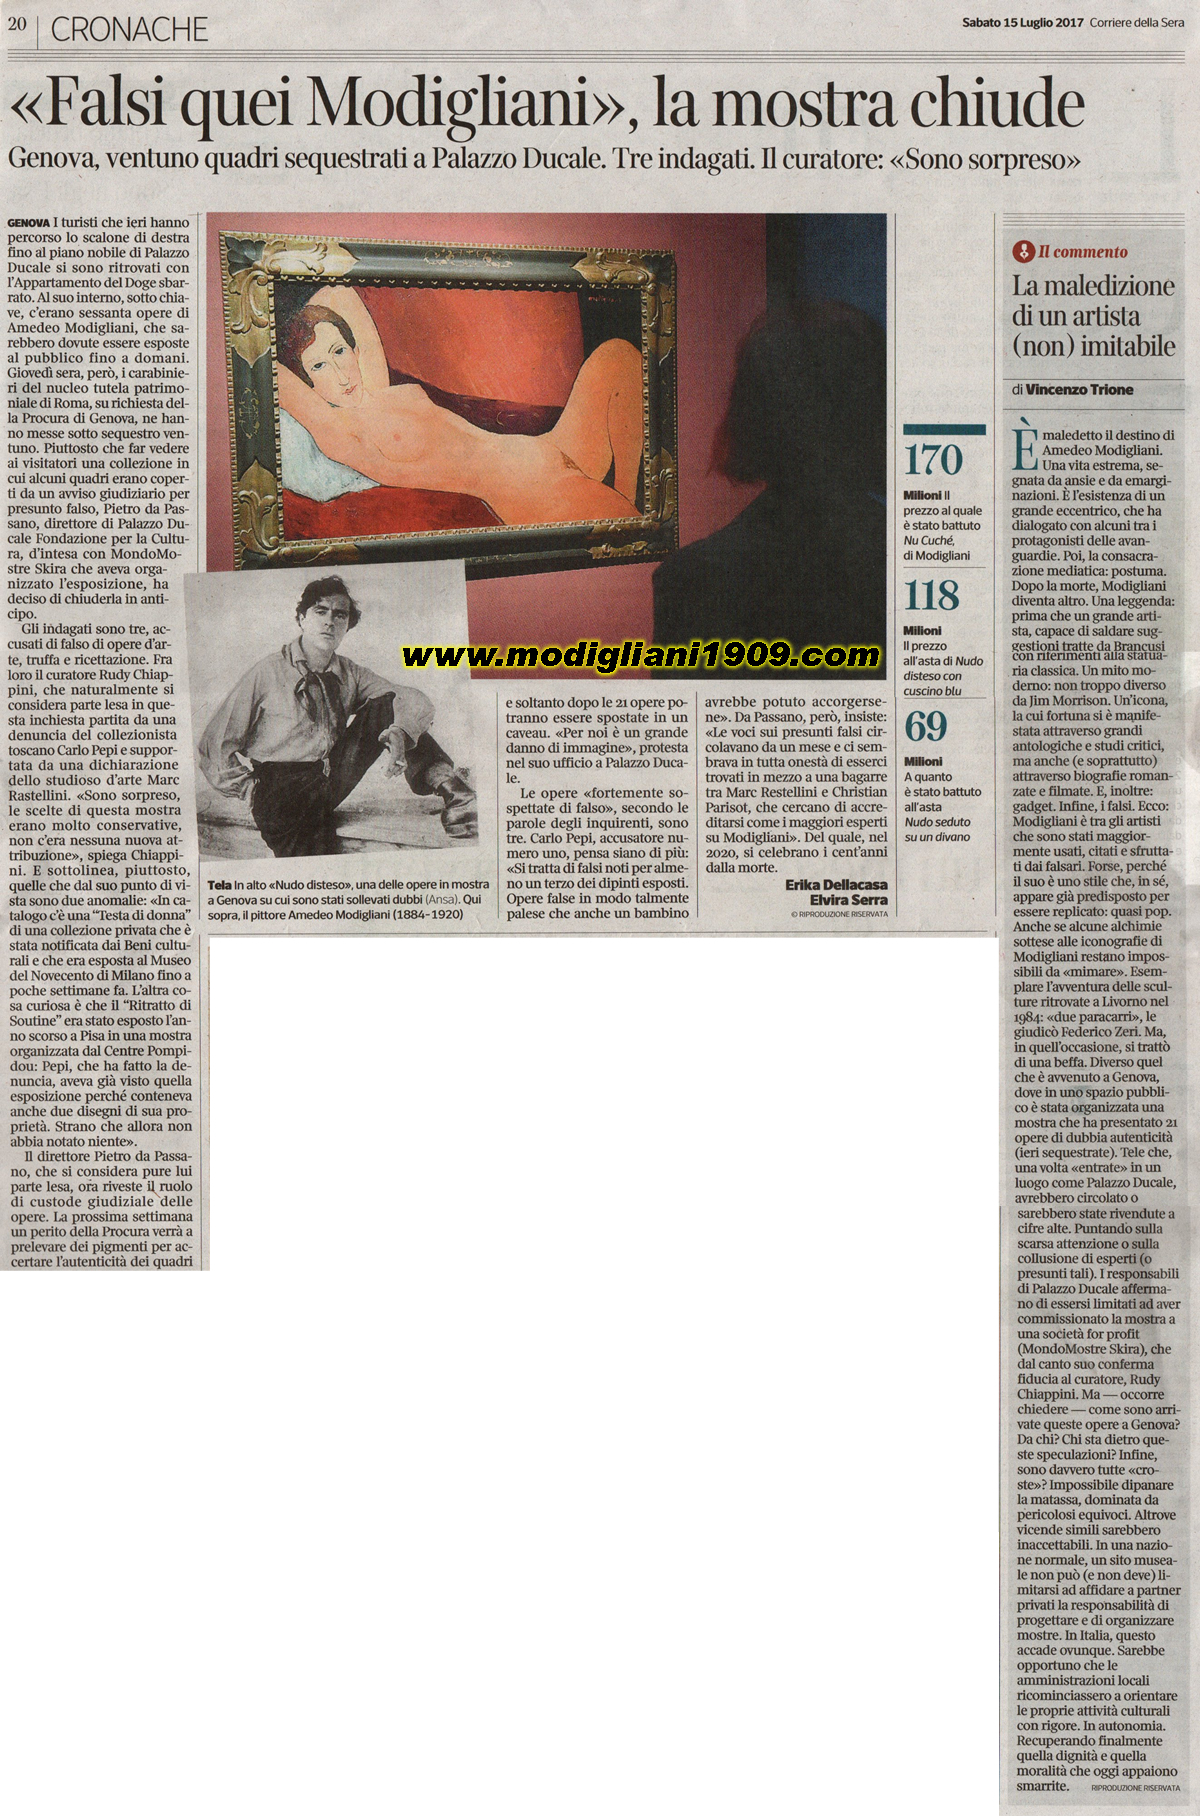  Fakes those Modigliani, the exhibition closes - Corriere della Sera 